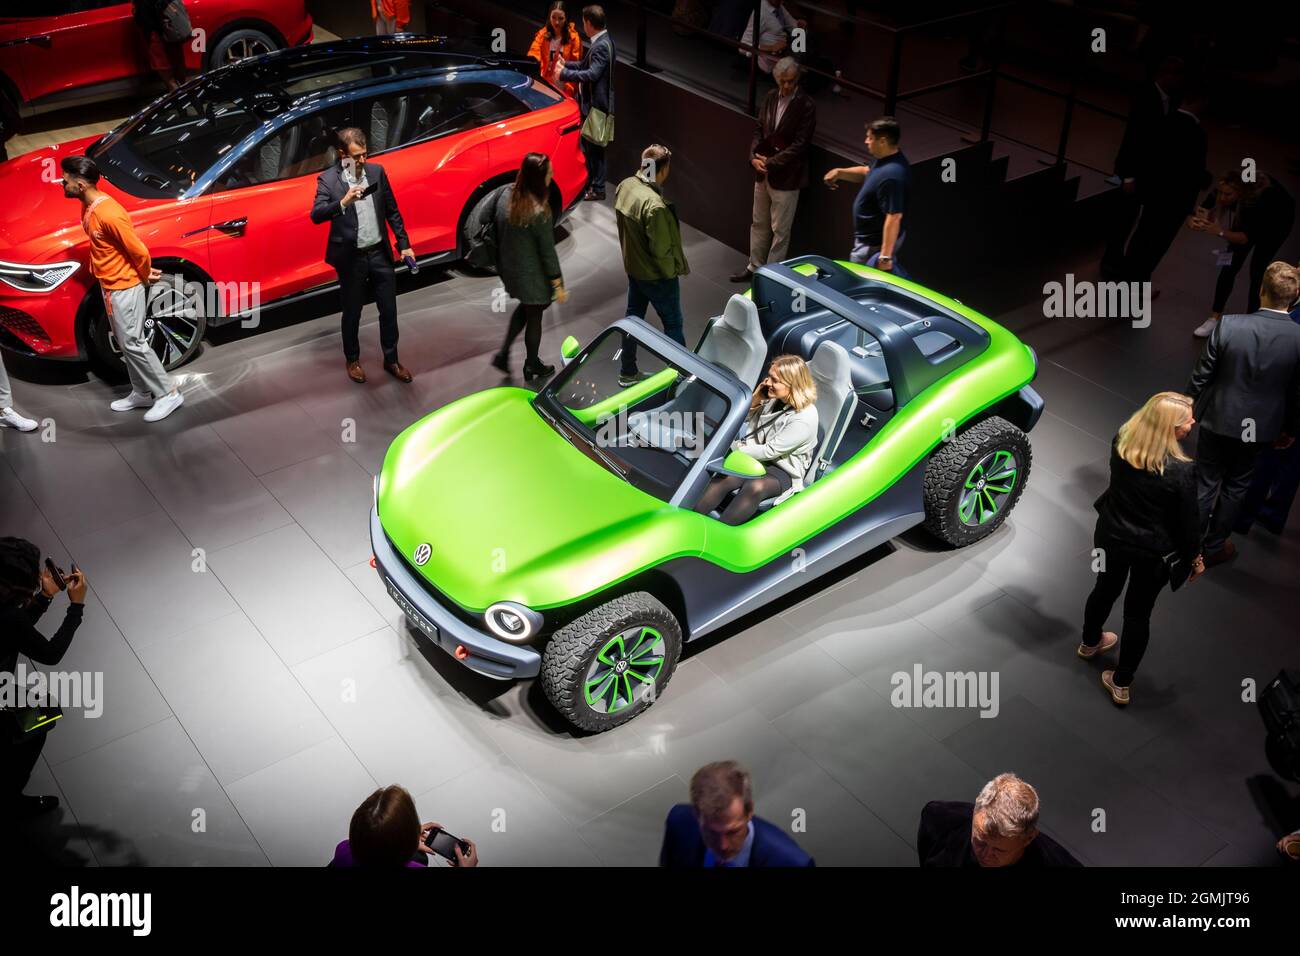 D.I. Volkswagen Une voiture électrique en buggy a été présentée au salon de l'automobile IAA de Francfort. Allemagne - 10 septembre 2019 Banque D'Images